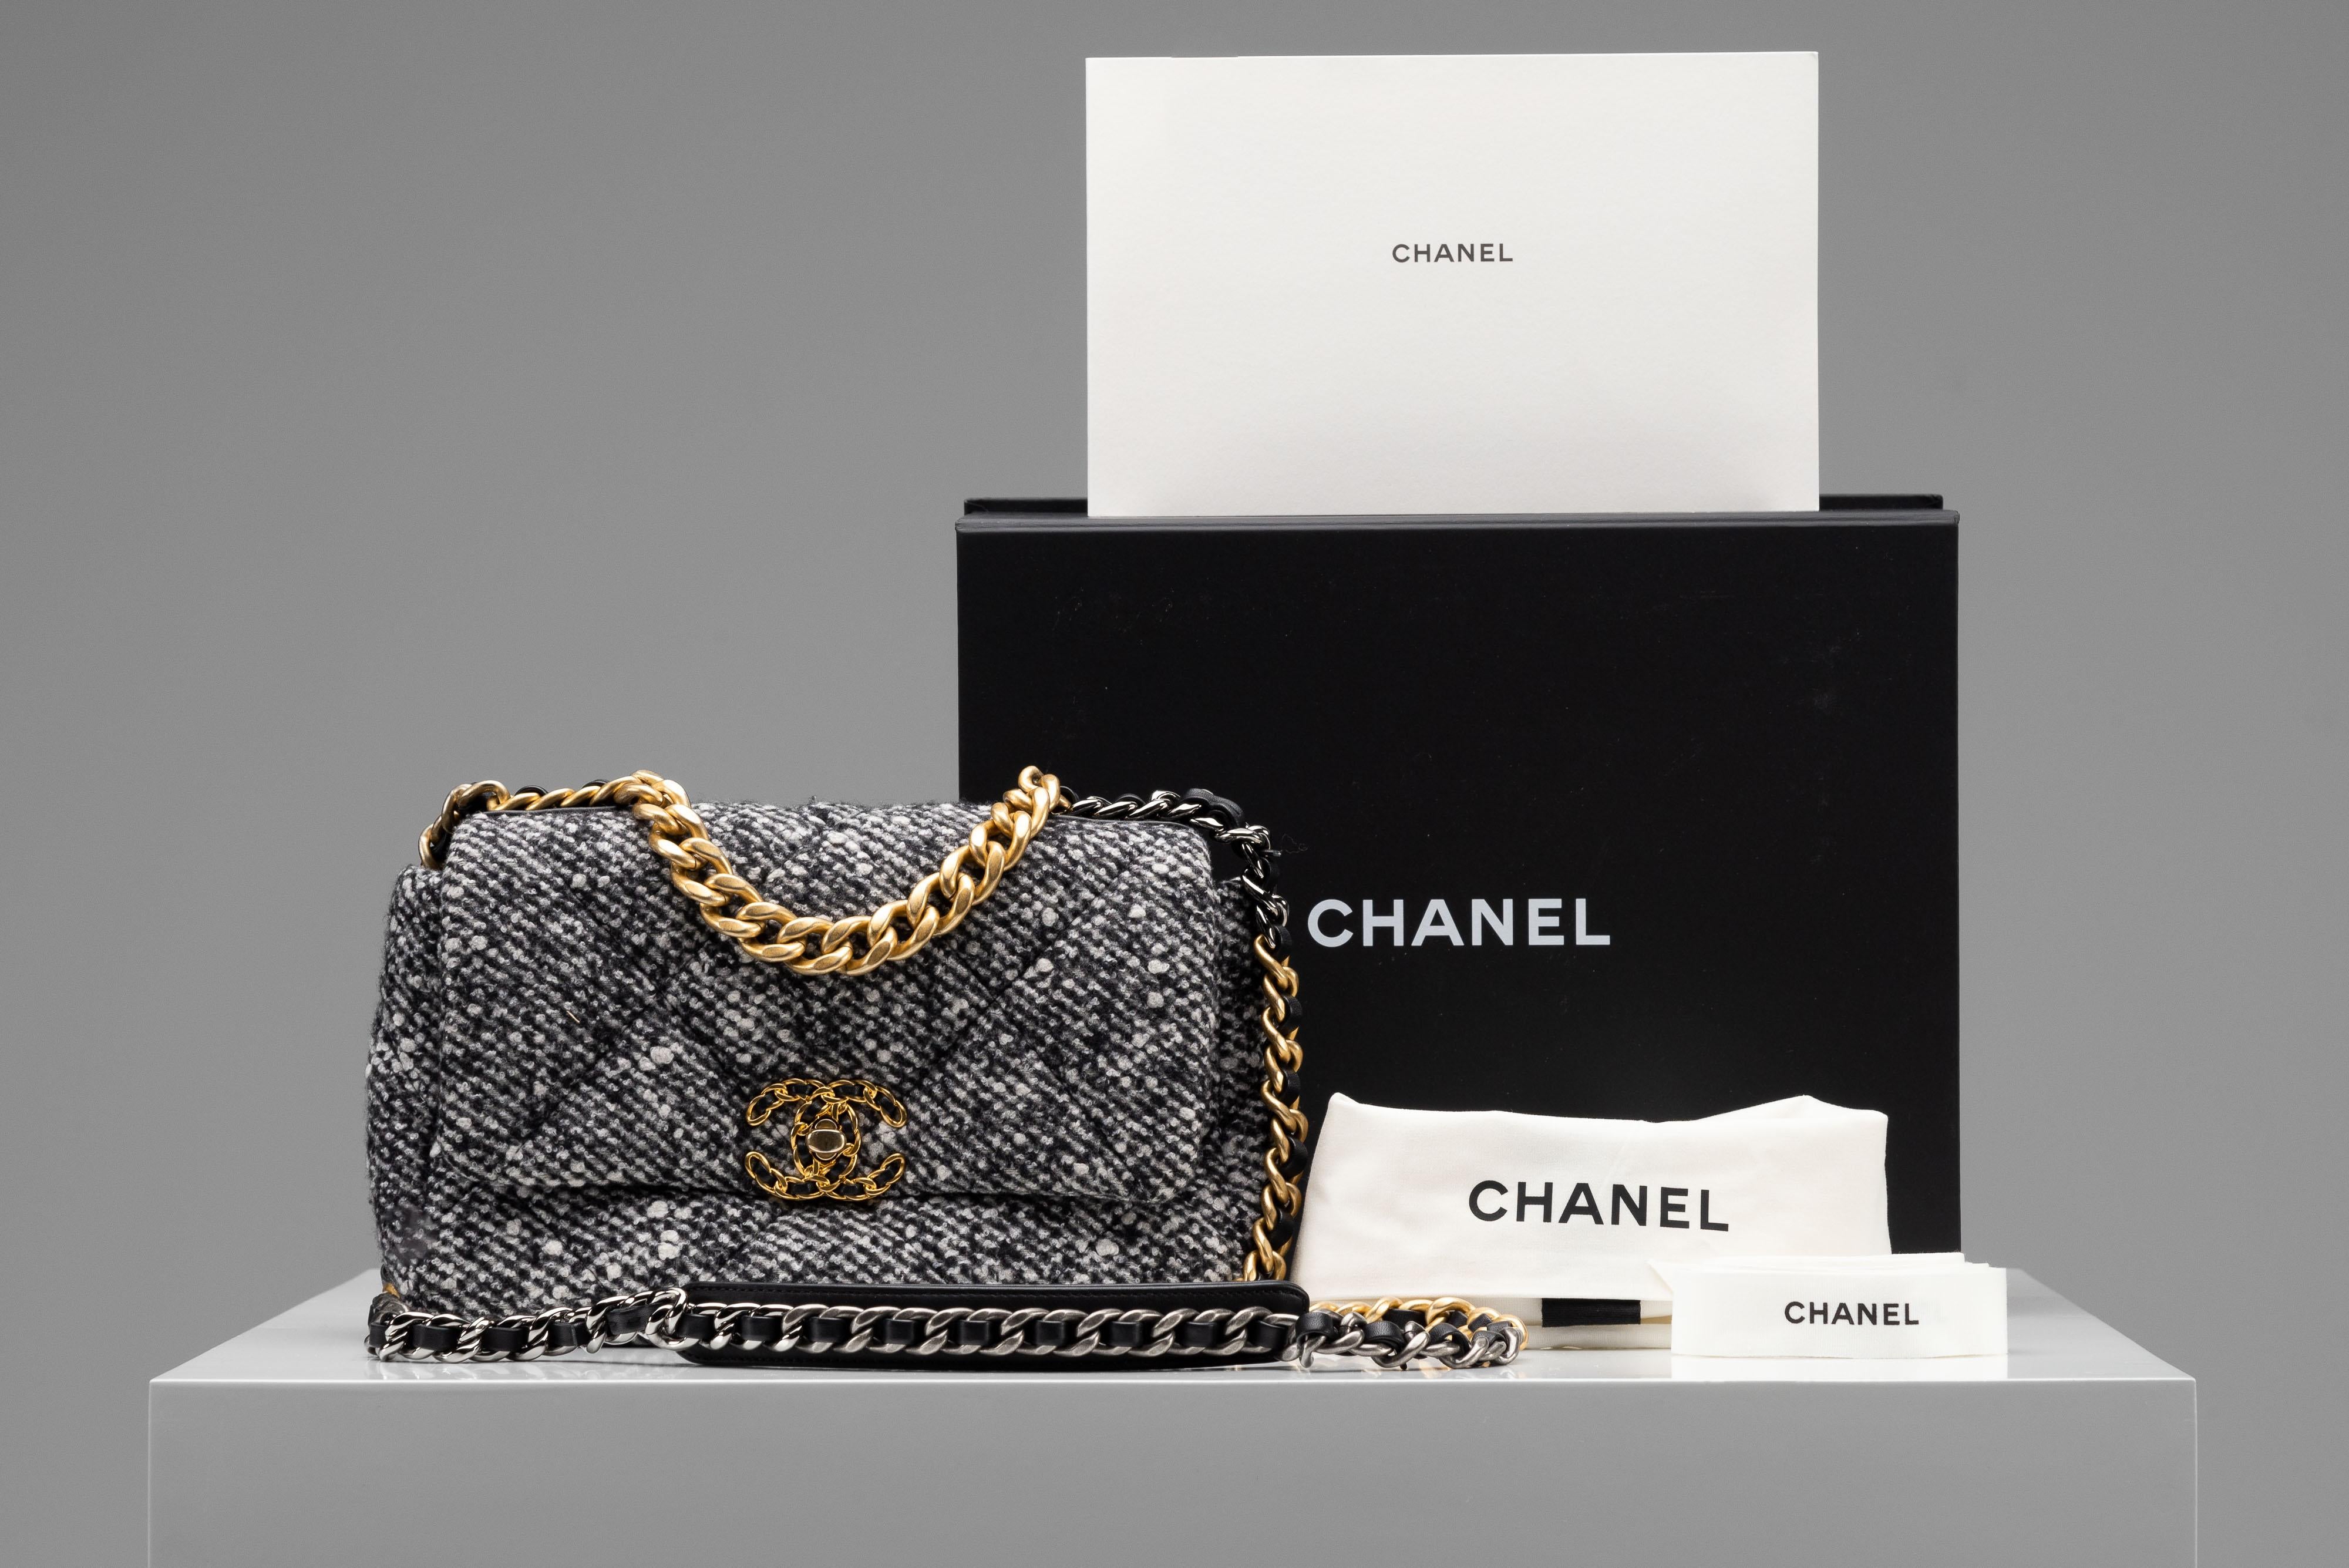 De la Collection SINETI nous vous proposons ce sac Chanel 19 à rabat :

- Marque : Chanel
- Modèle : 19 (Petit/ Régulier 26cm)
- Couleur : Tweed (Noir/ Blanc/ Gris)
- Année : 2021
- Condit : Excellent 
- MATERIAL : Tweed, quincaillerie couleur or
-